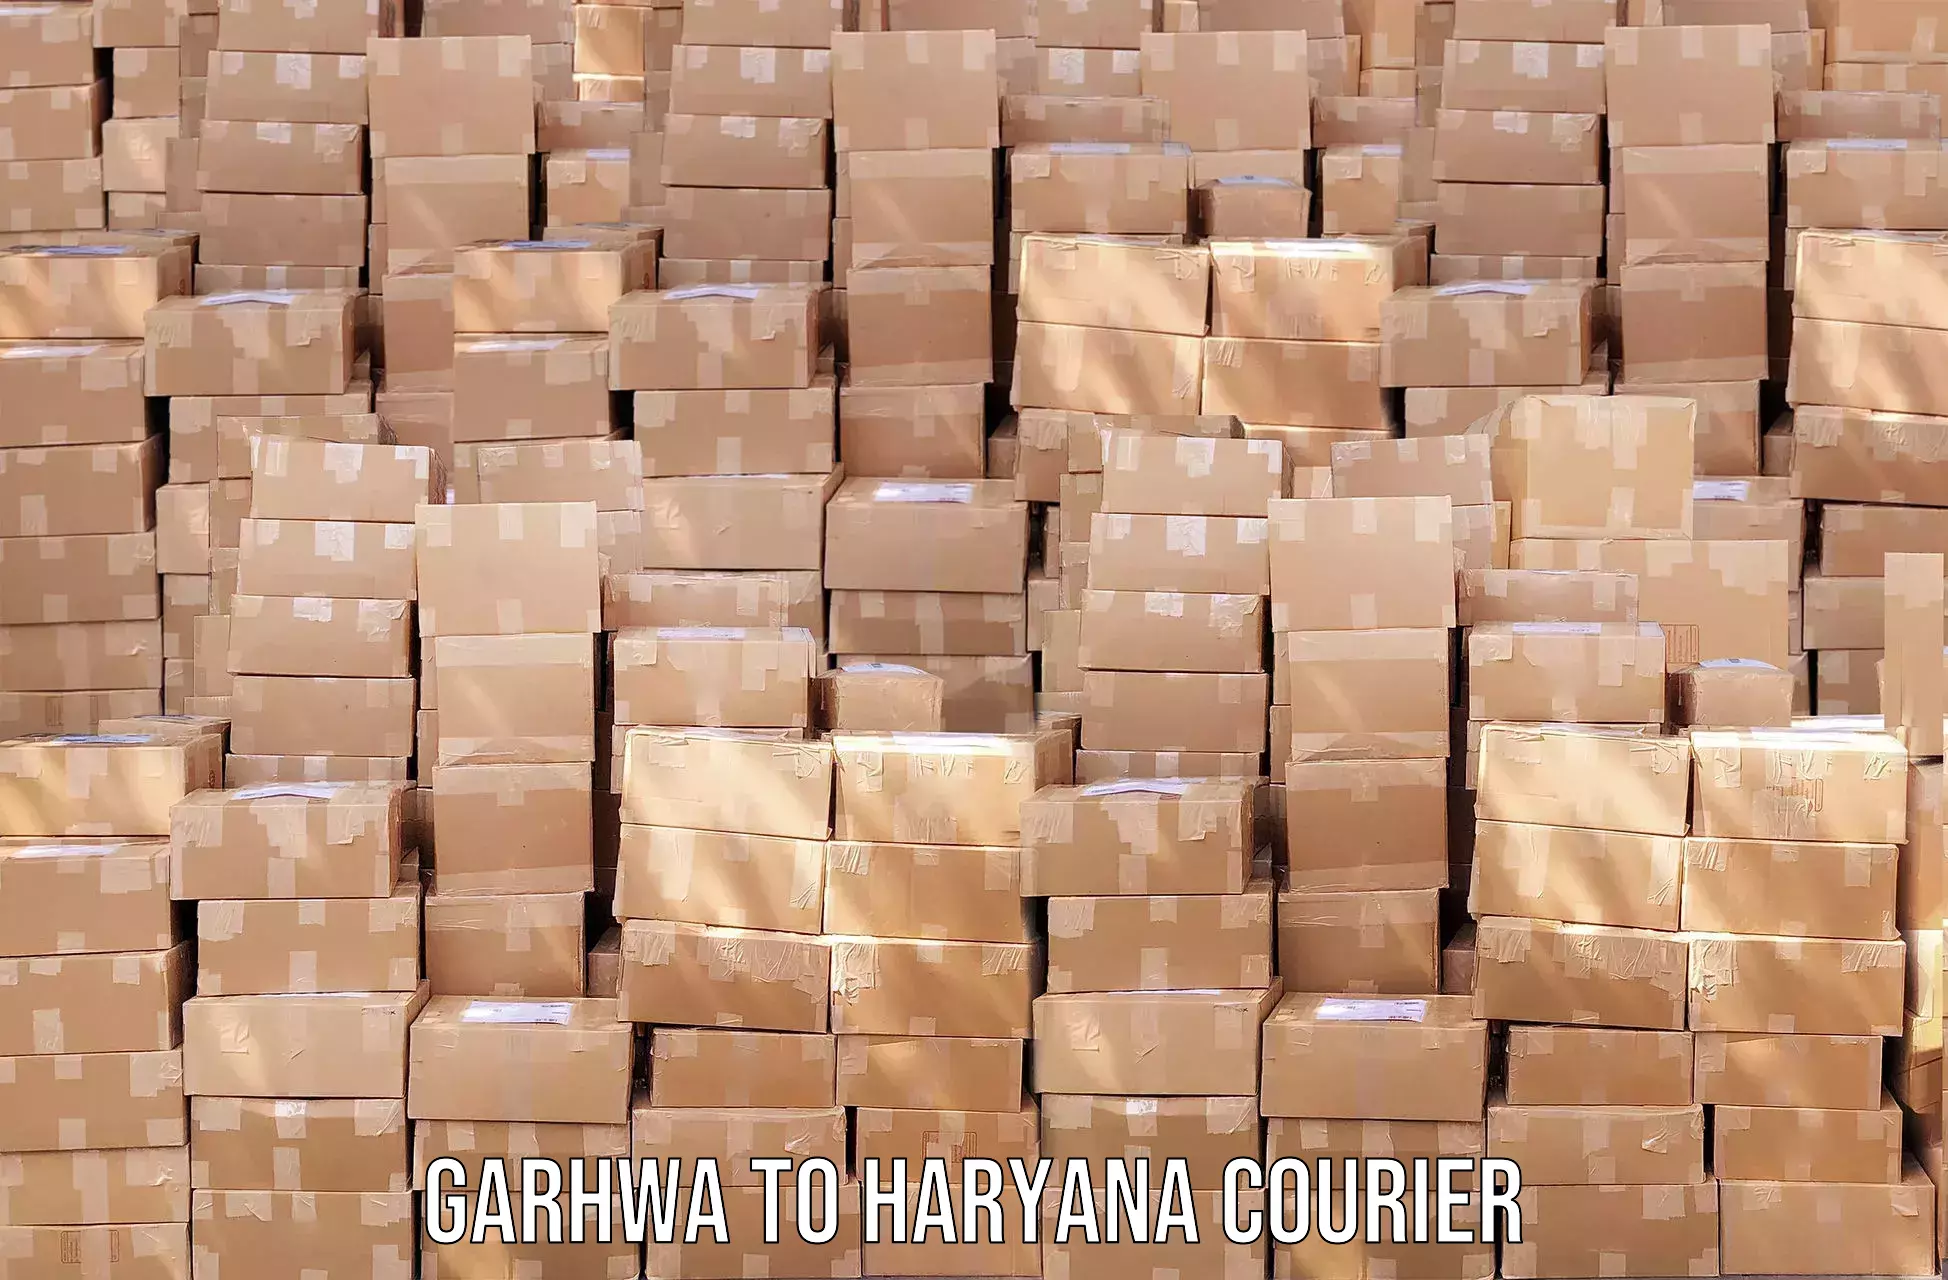 Regular parcel service Garhwa to Jhajjar